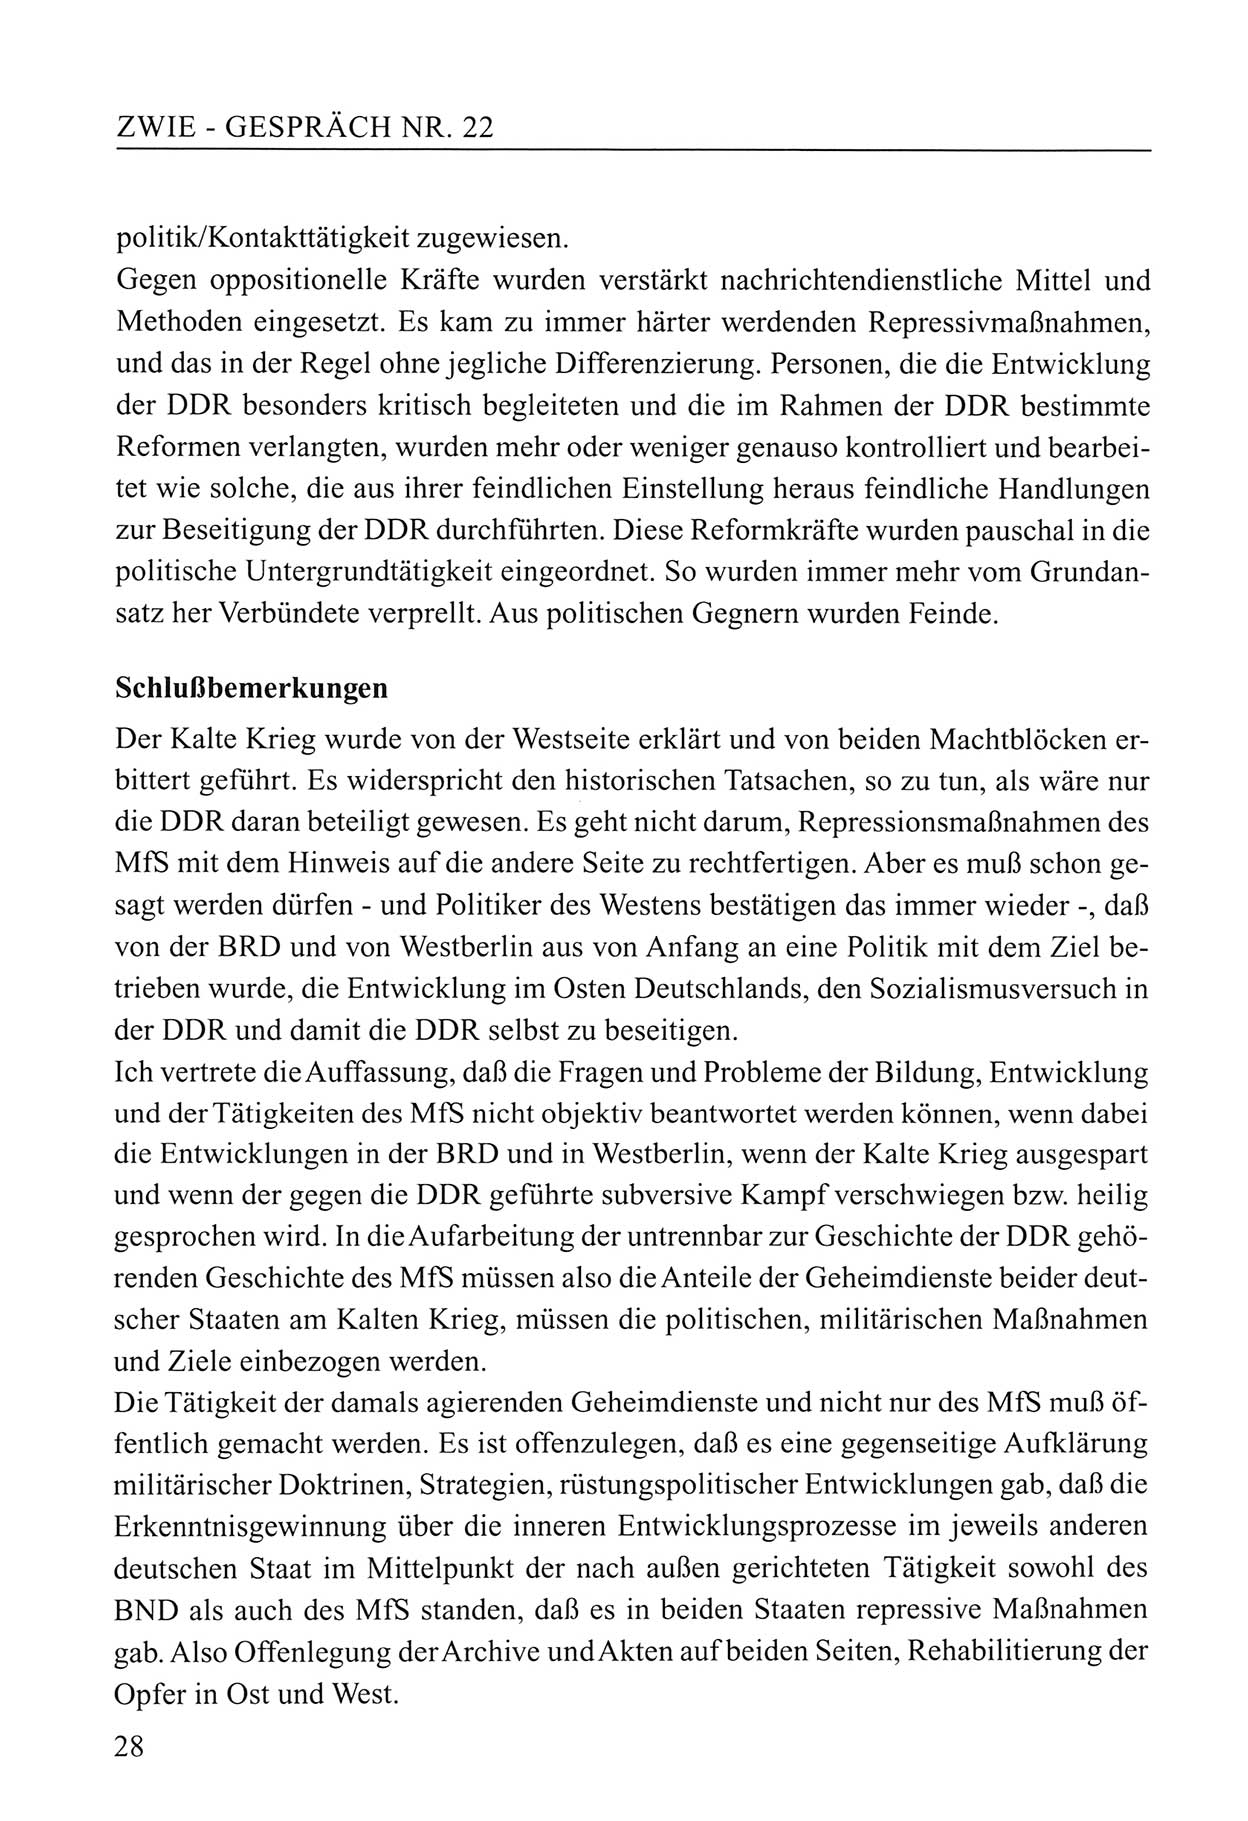 Zwie-Gespräch, Beiträge zum Umgang mit der Staatssicherheits-Vergangenheit [Deutsche Demokratische Republik (DDR)], Ausgabe Nr. 22, Berlin 1994, Seite 28 (Zwie-Gespr. Ausg. 22 1994, S. 28)